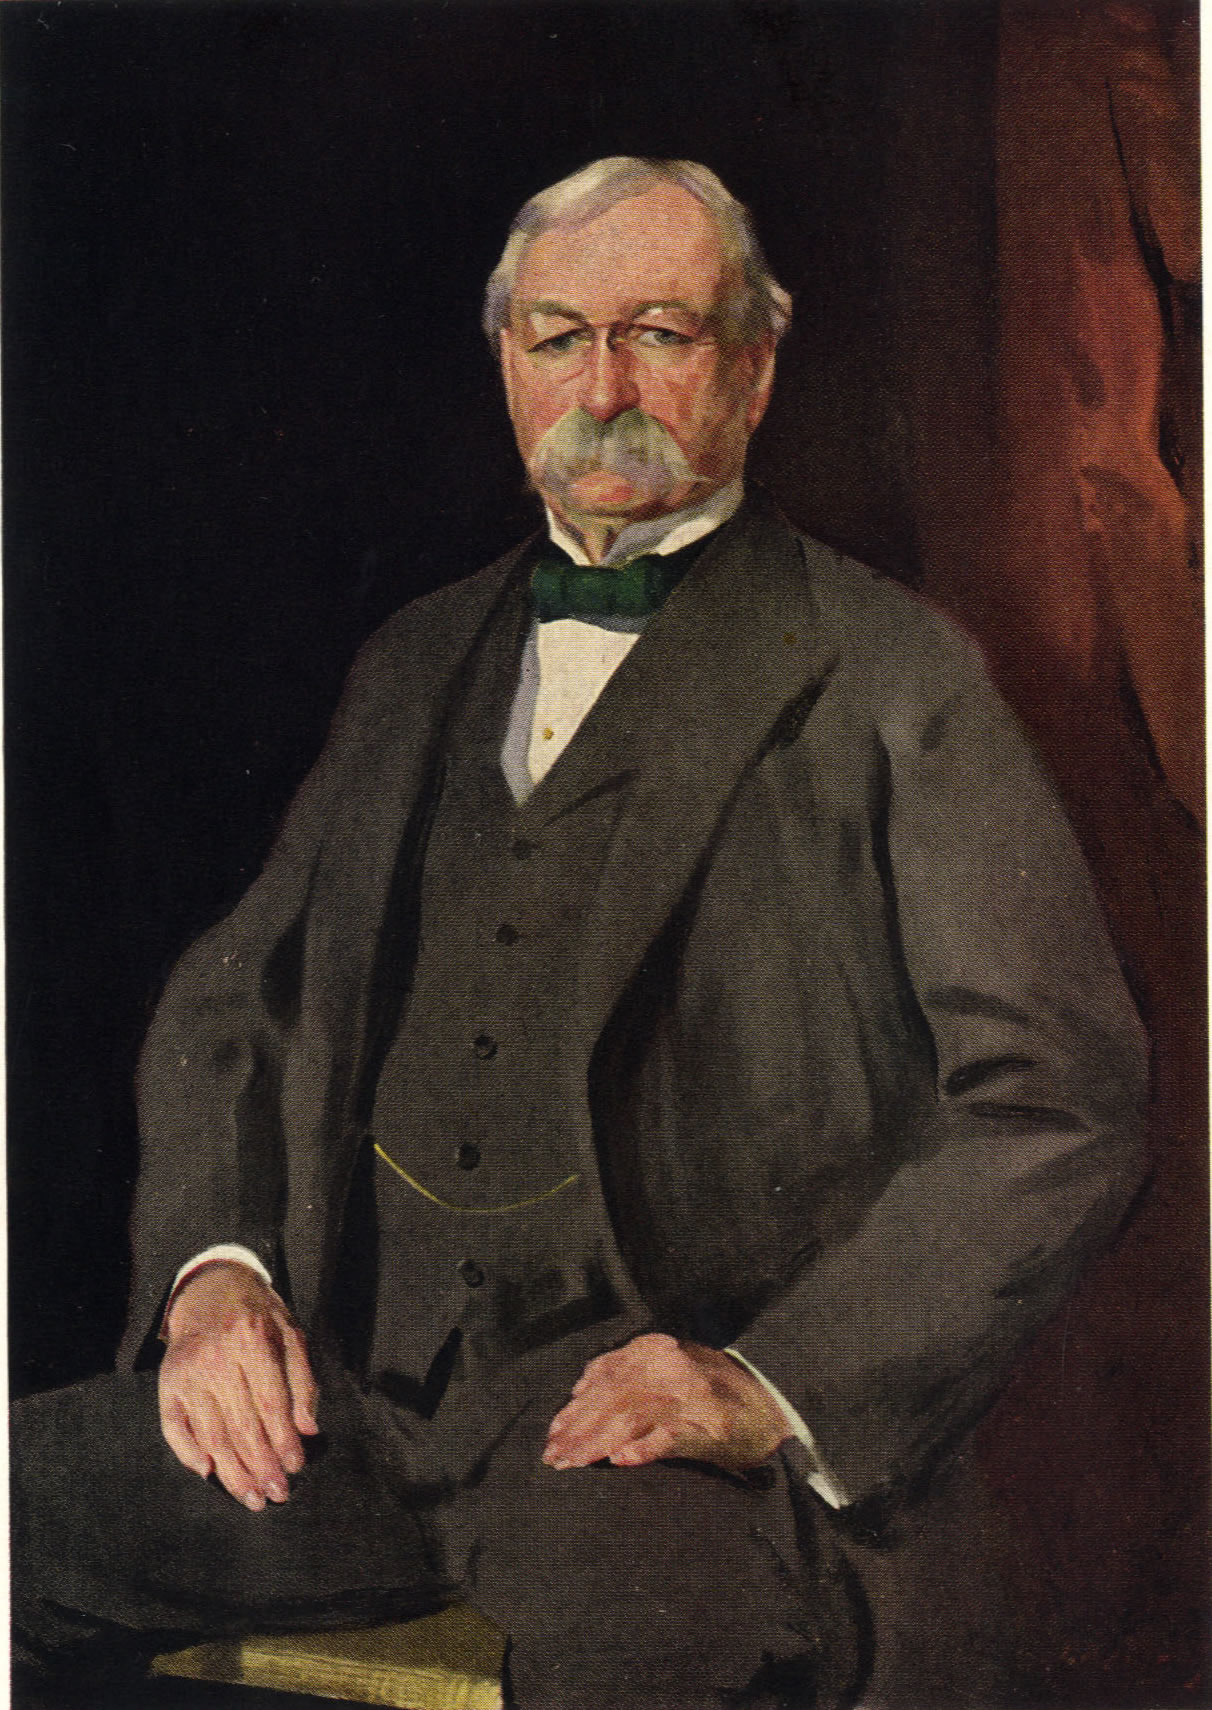 Portrait of N.W. Ayer